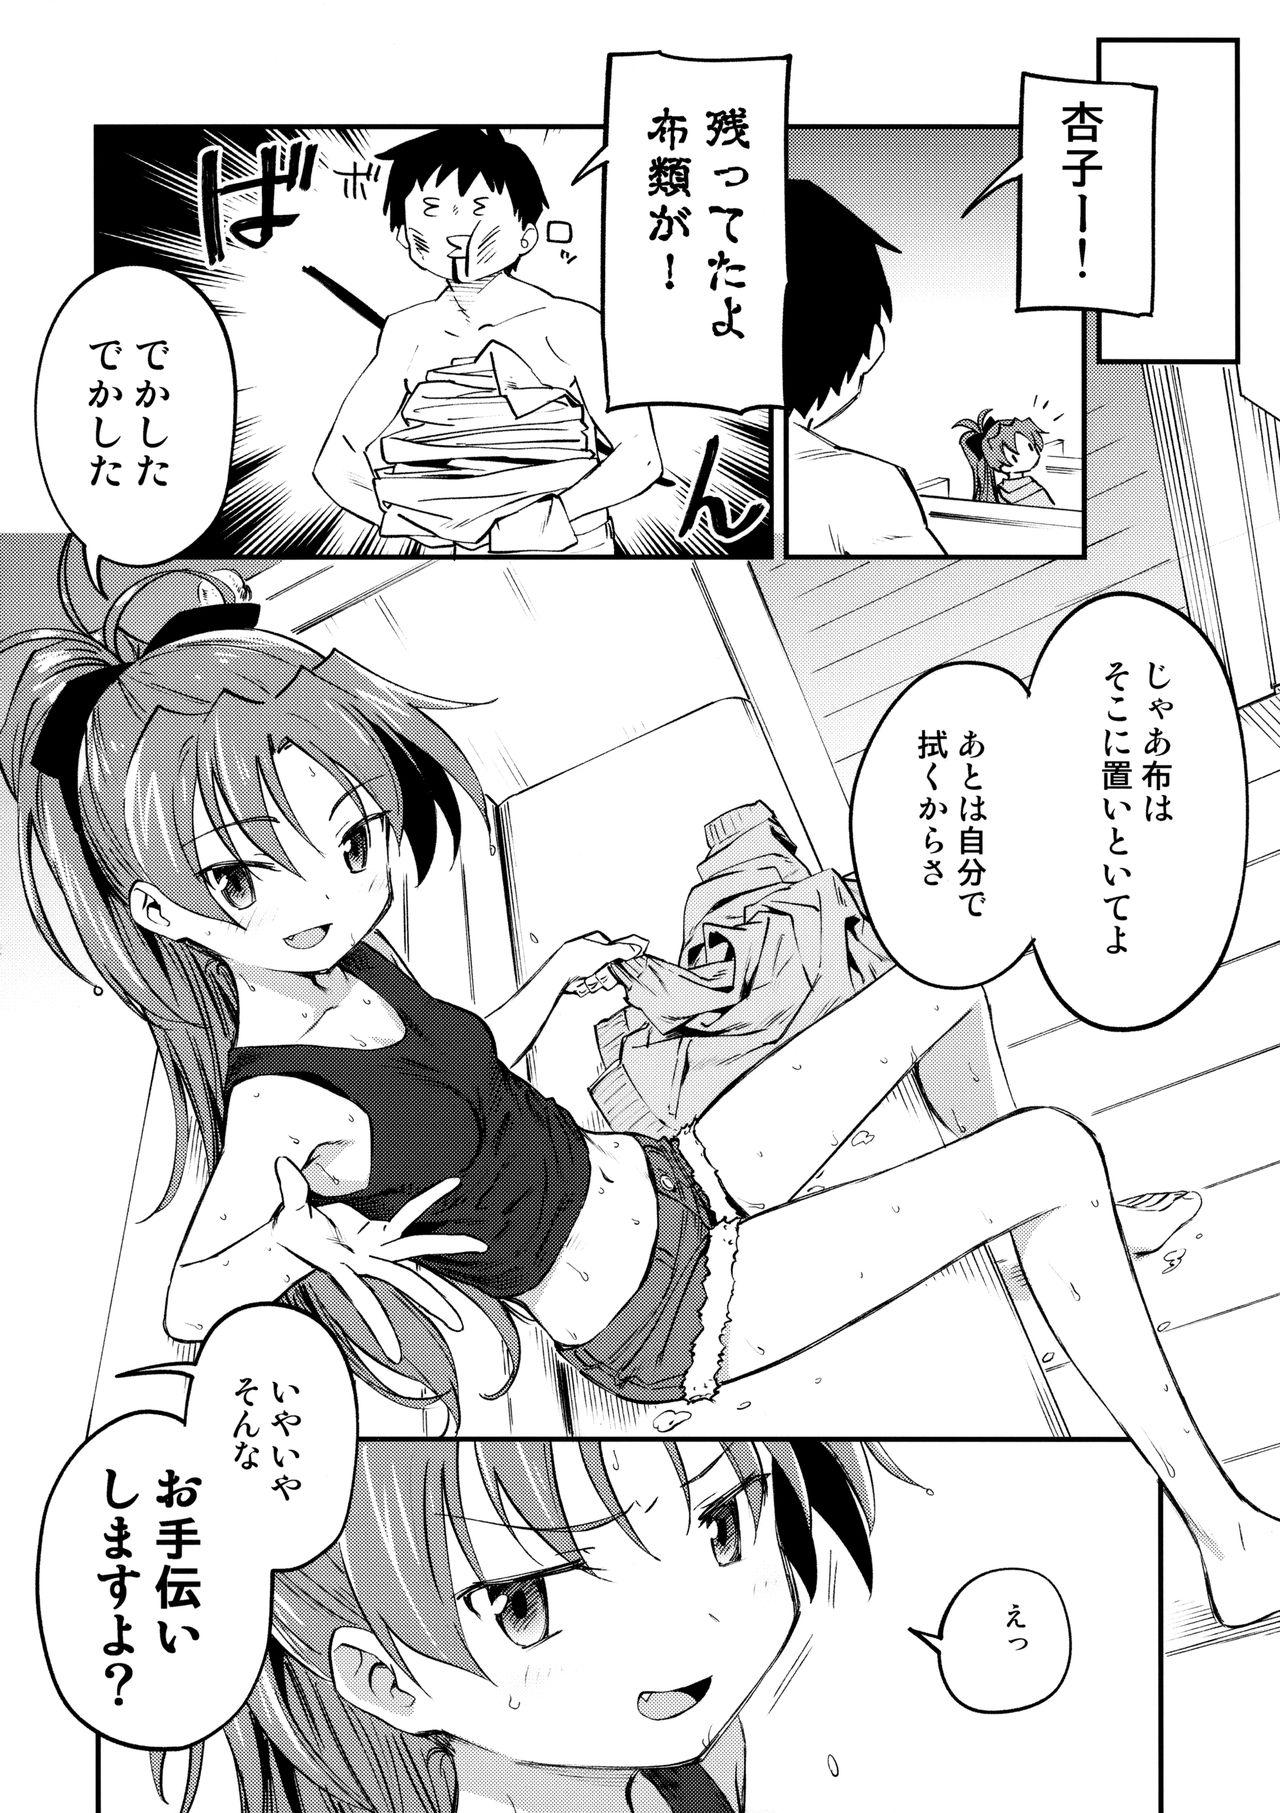 Parties Kyouko to Are Suru Hon 3 - Puella magi madoka magica Cachonda - Page 5